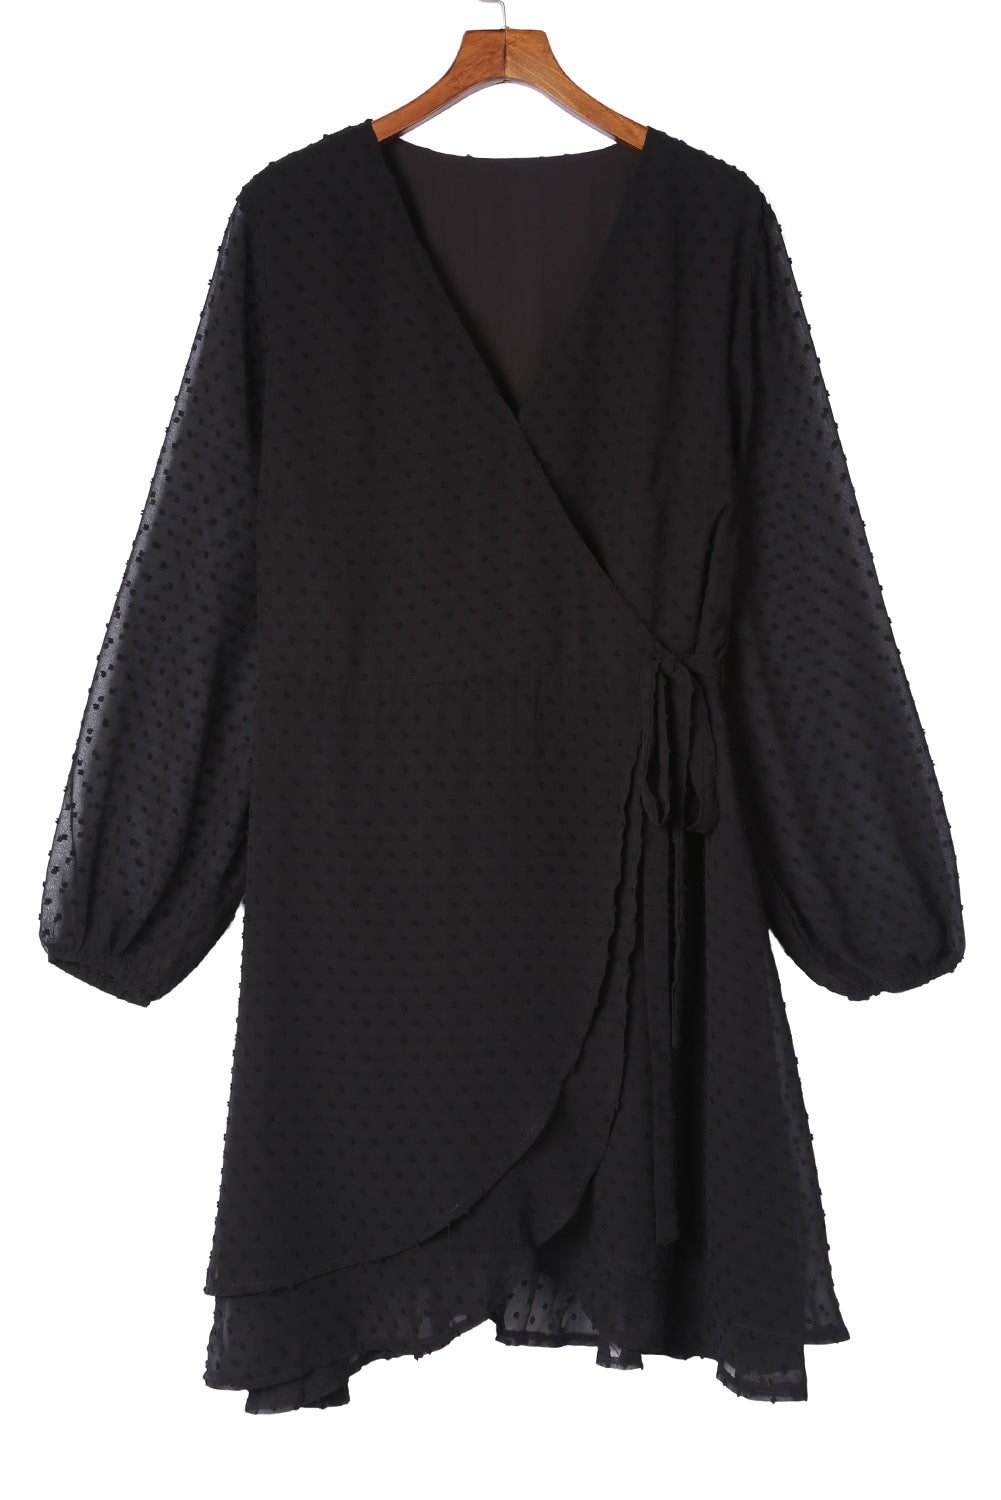 Crna švicarska haljina dugih rukava s V izrezom i točkicama veće veličine